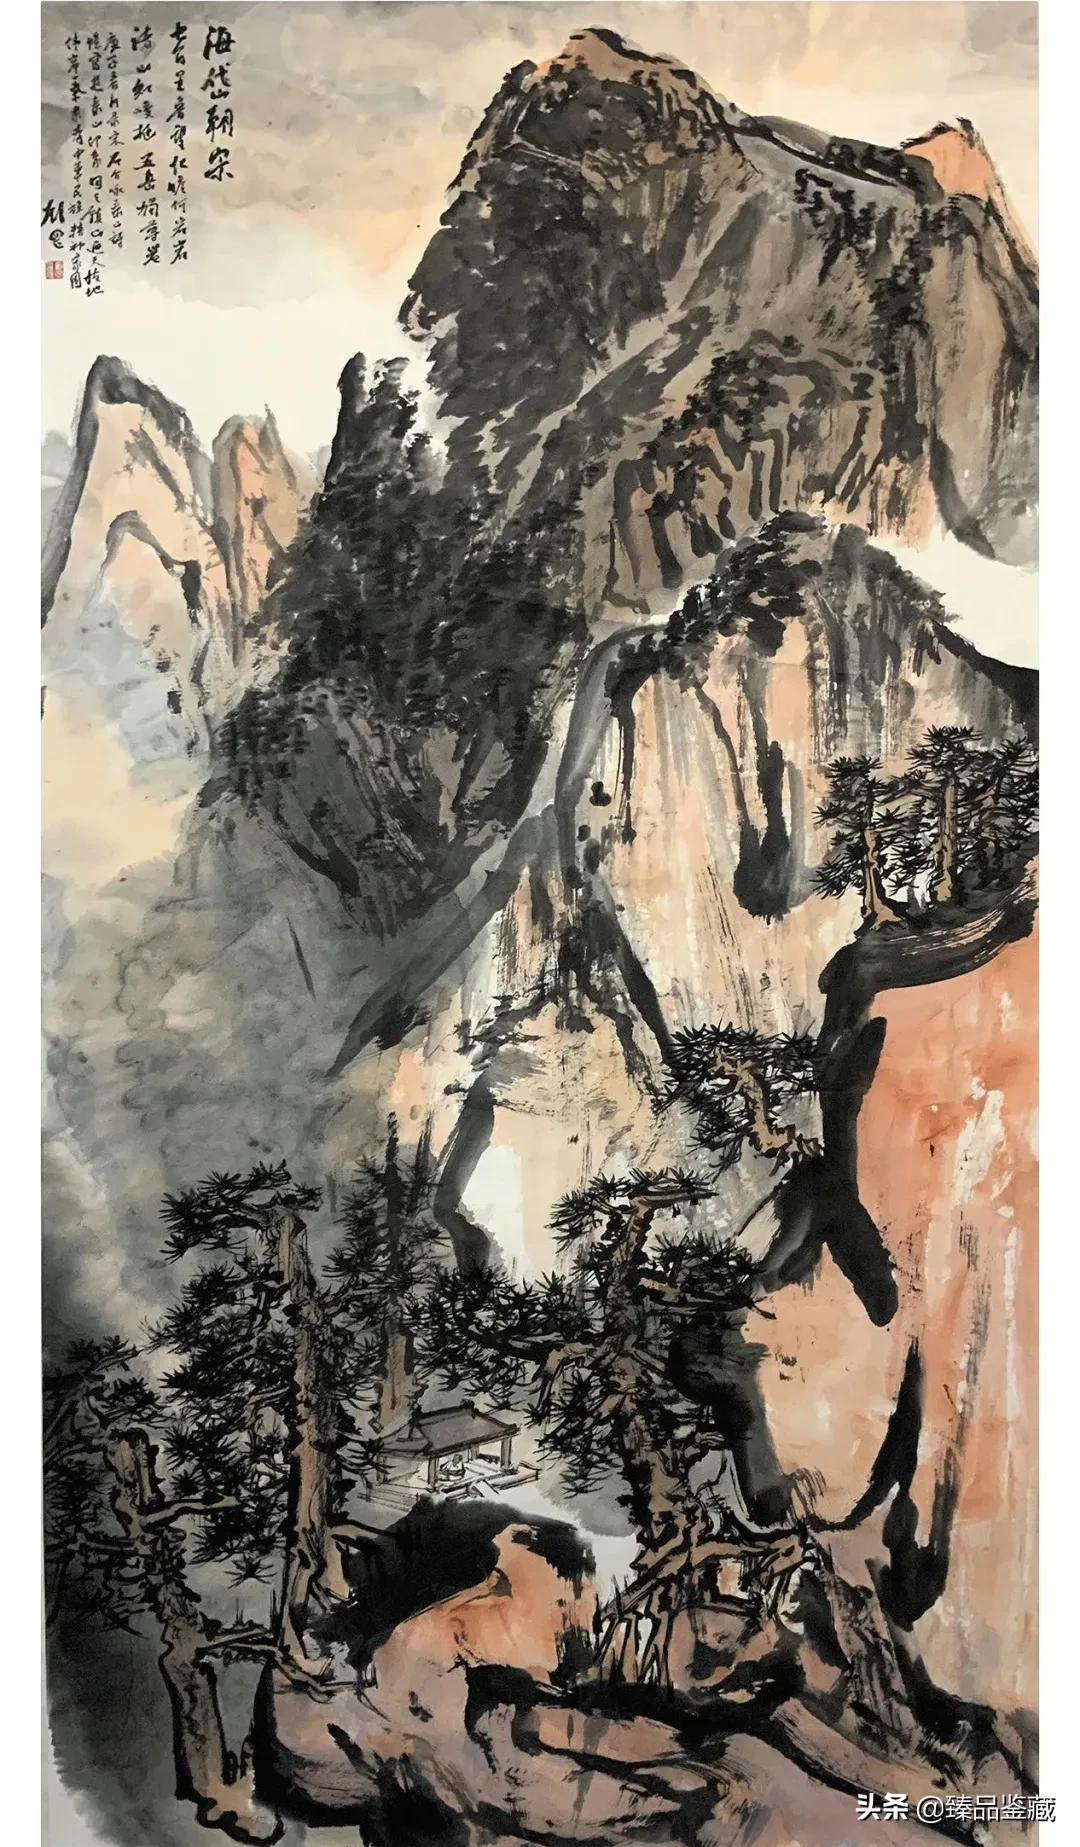 胸中笔墨 腕底山川——著名画家刘罡的山水画新形态